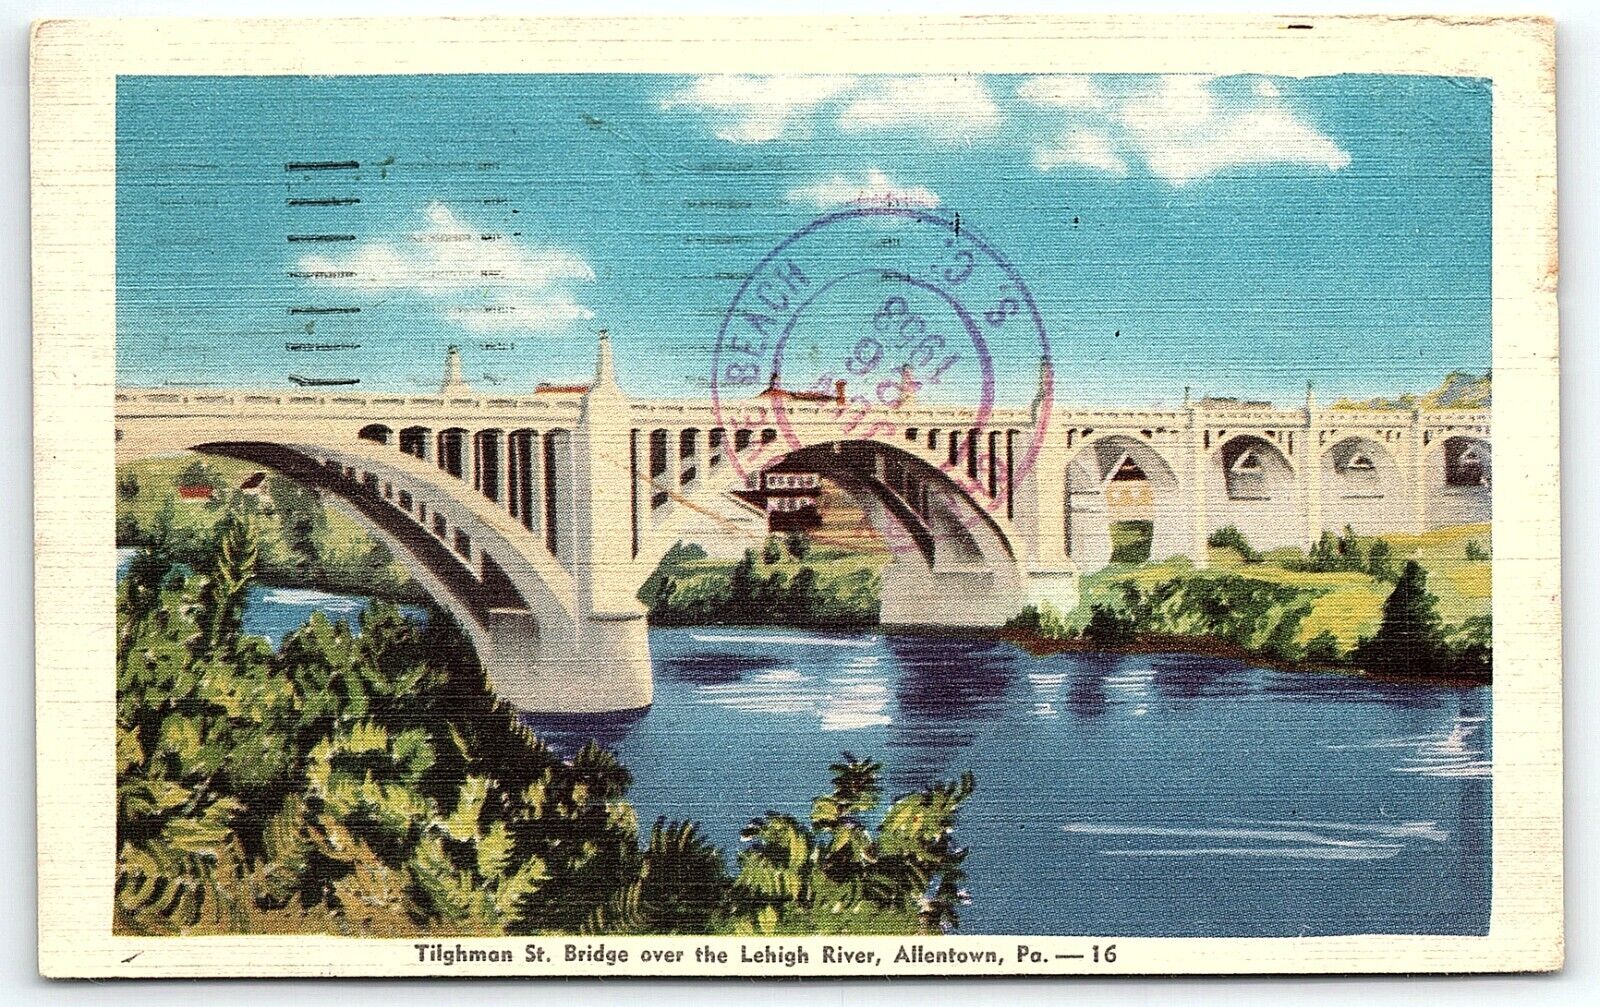 1953 ALLENTOWN PA  TILGHMAN ST. BRIDGE OVER LEHIGH RIVER LINEN POSTCARD P3403